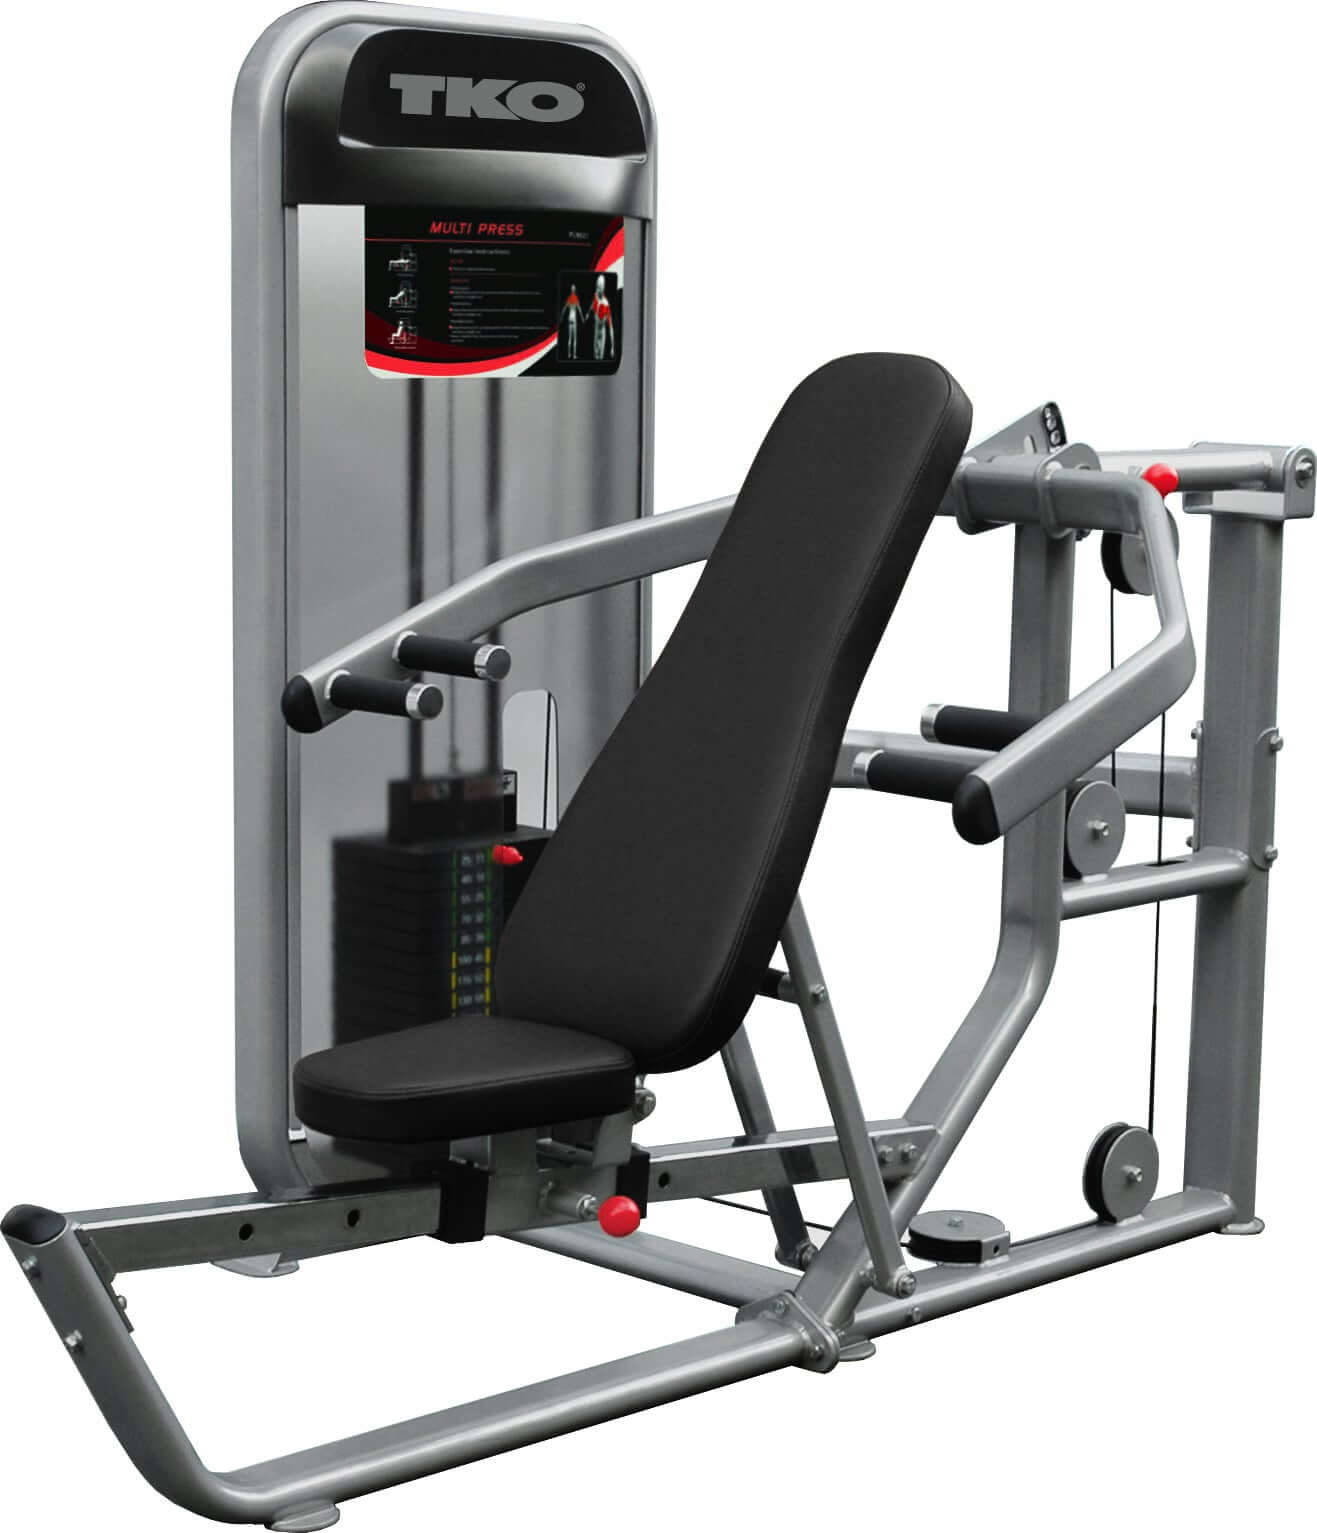 TKO Achieve Dual Multi-Press Machine 170 lb Weight Stack